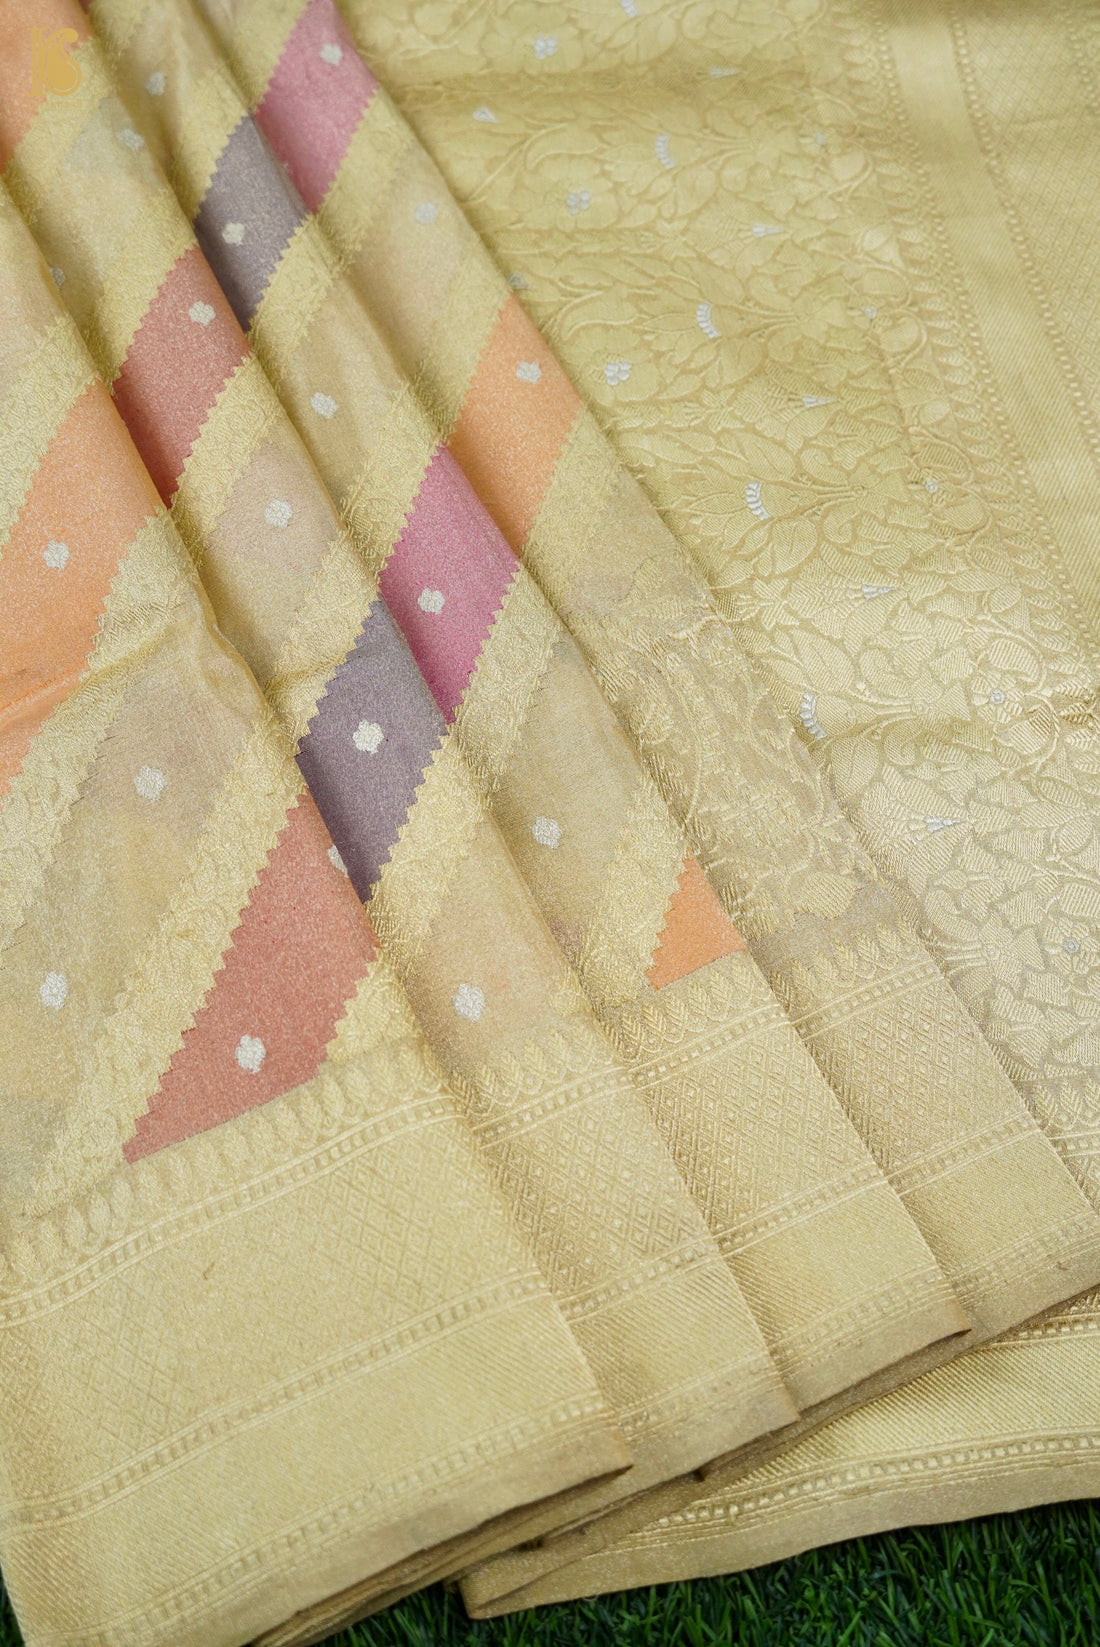 Handloom Banarasi Rangkat Tissue by Silk Saree